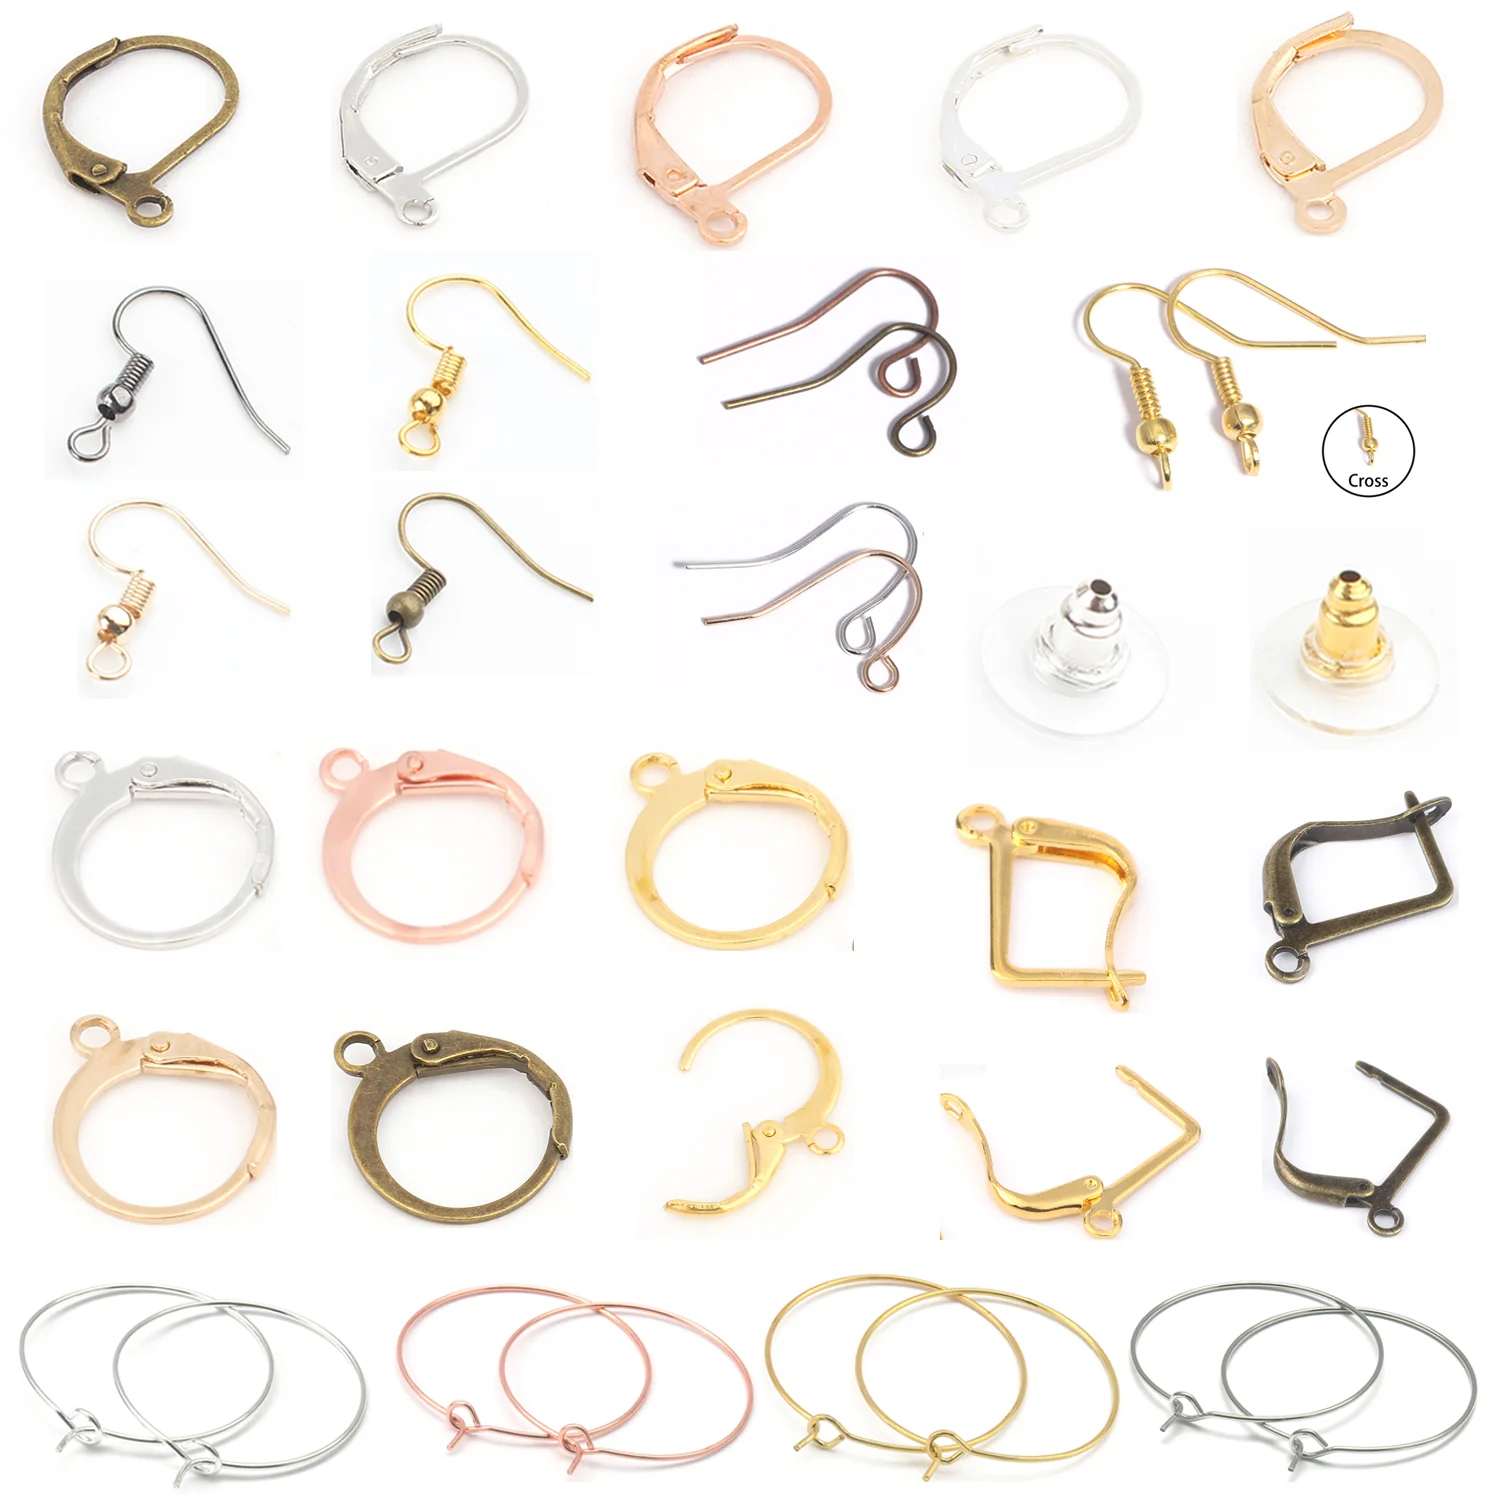 ganchos-para-pendientes-de-acero-inoxidable-accesorios-para-hacer-joyas-color-dorado-20-100-uds-por-lote